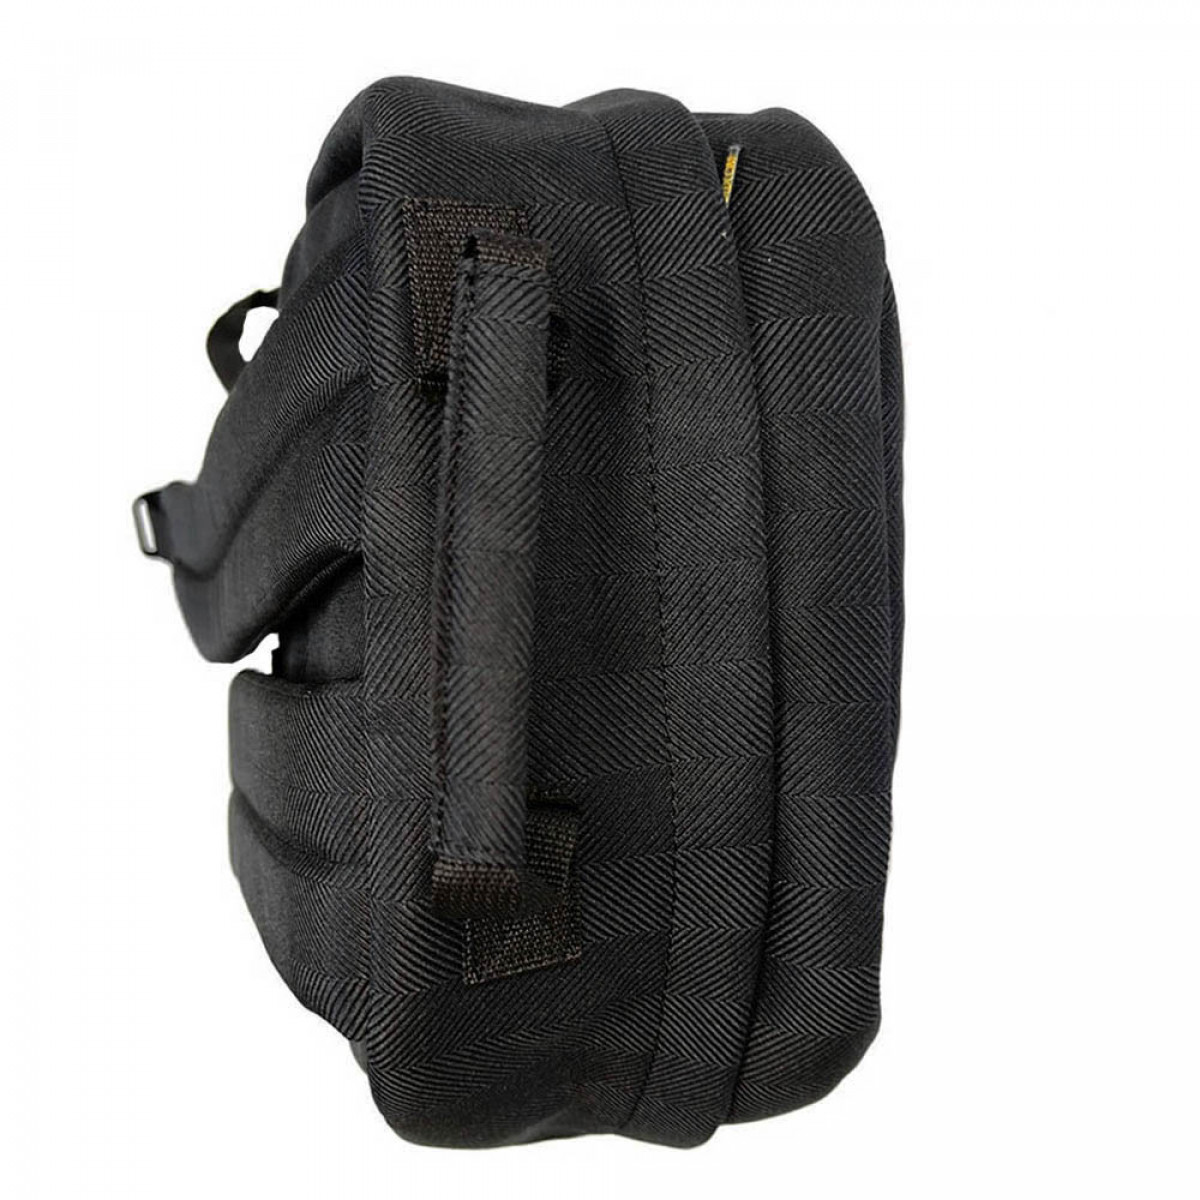 Backpack URBAN, Black